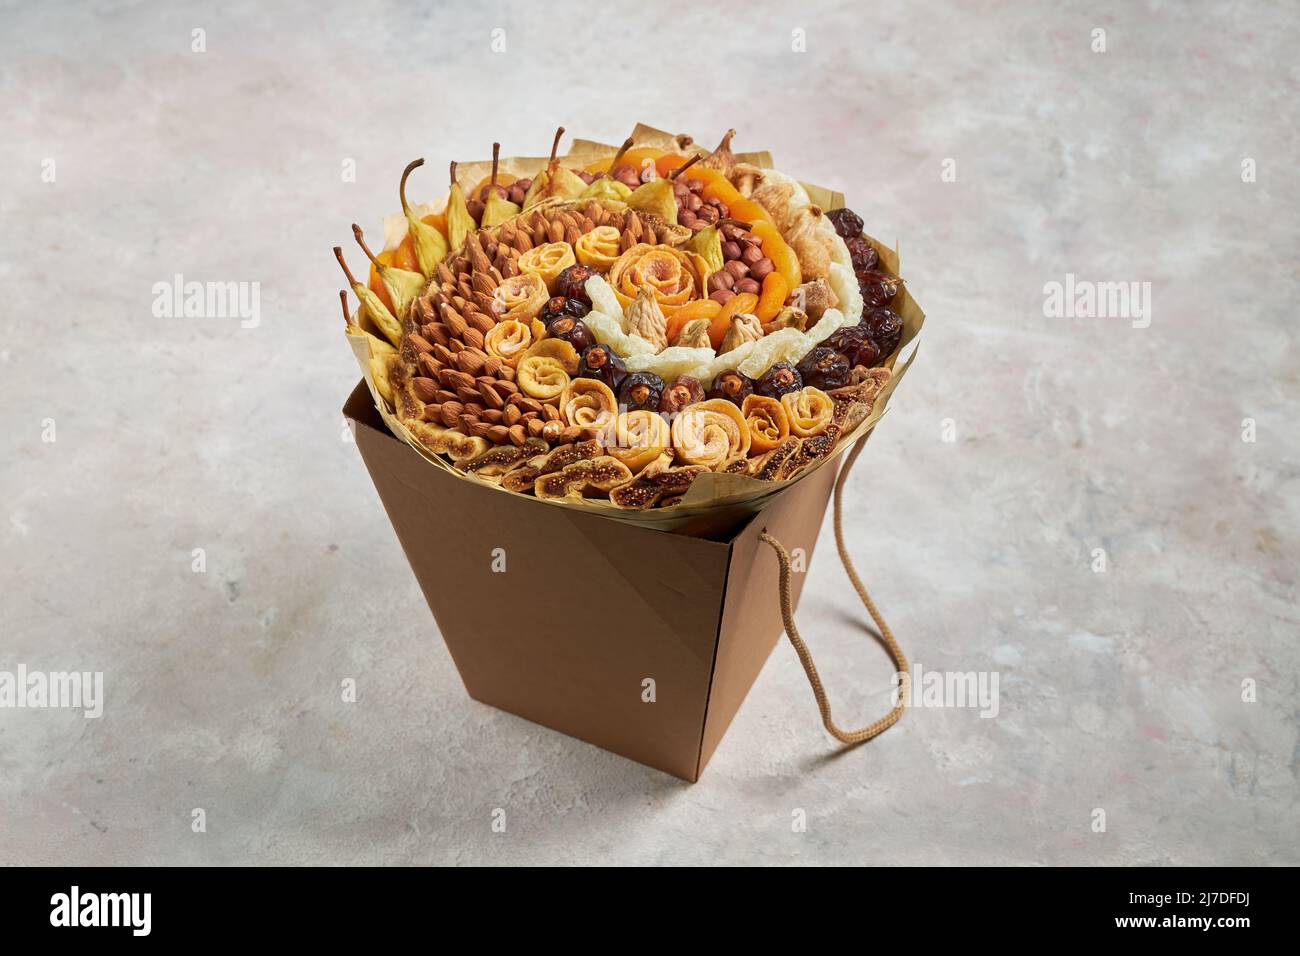 Un ramo grande de diferentes frutos secos y nueces yace en una caja de cartón Foto de stock